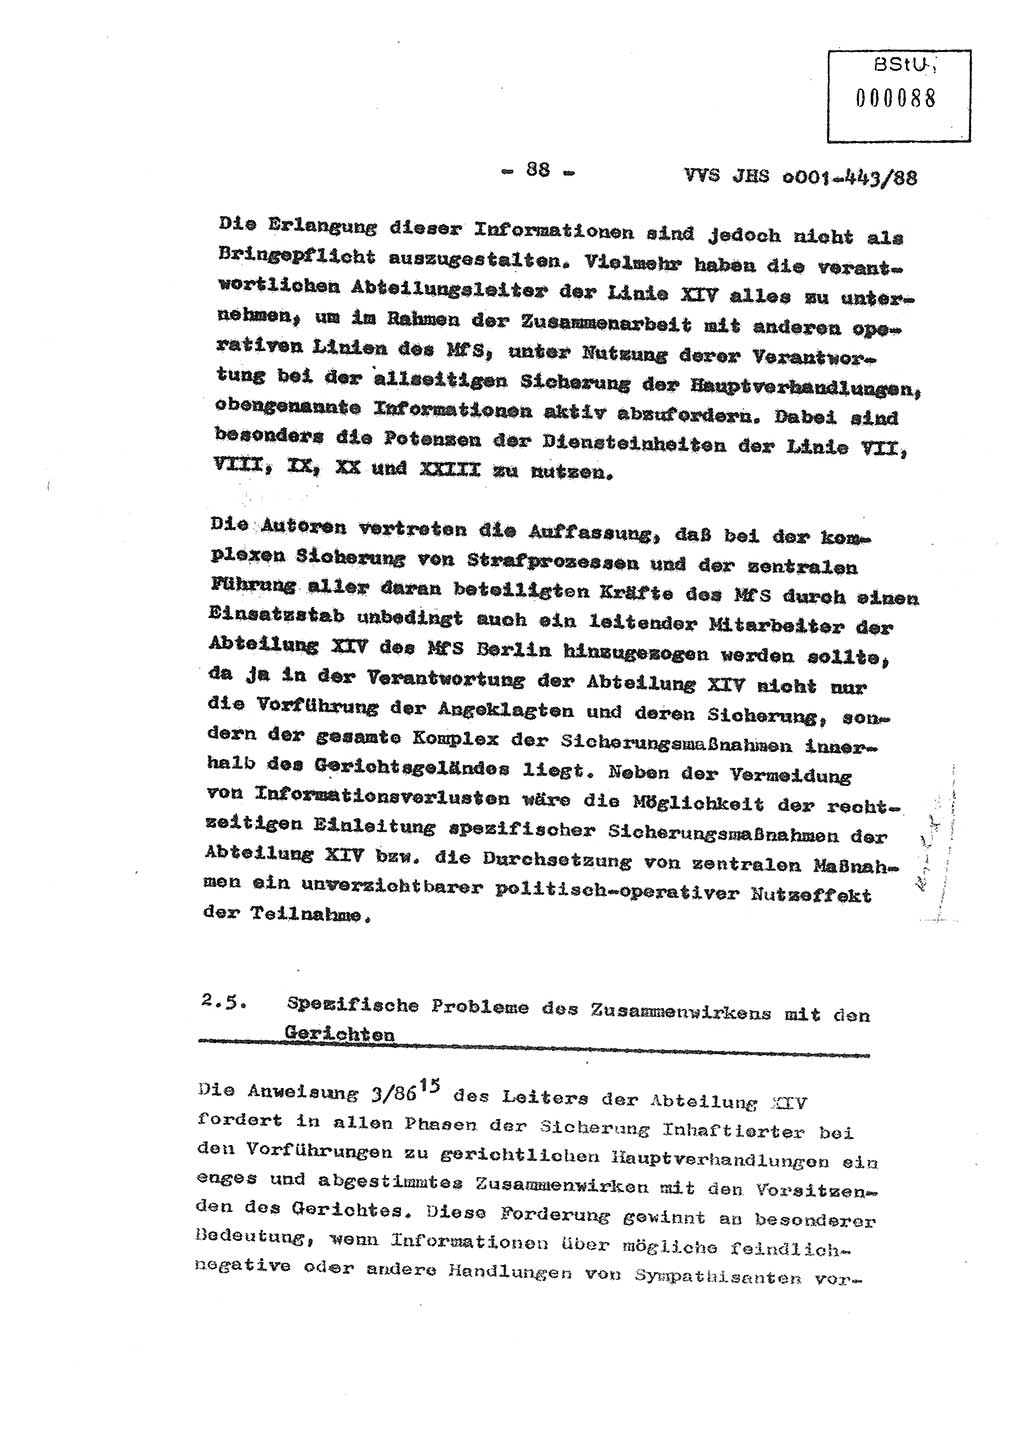 Diplomarbeit Hauptmann Michael Rast (Abt. ⅩⅣ), Major Bernd Rahaus (Abt. ⅩⅣ), Ministerium für Staatssicherheit (MfS) [Deutsche Demokratische Republik (DDR)], Juristische Hochschule (JHS), Vertrauliche Verschlußsache (VVS) o001-443/88, Potsdam 1988, Seite 88 (Dipl.-Arb. MfS DDR JHS VVS o001-443/88 1988, S. 88)